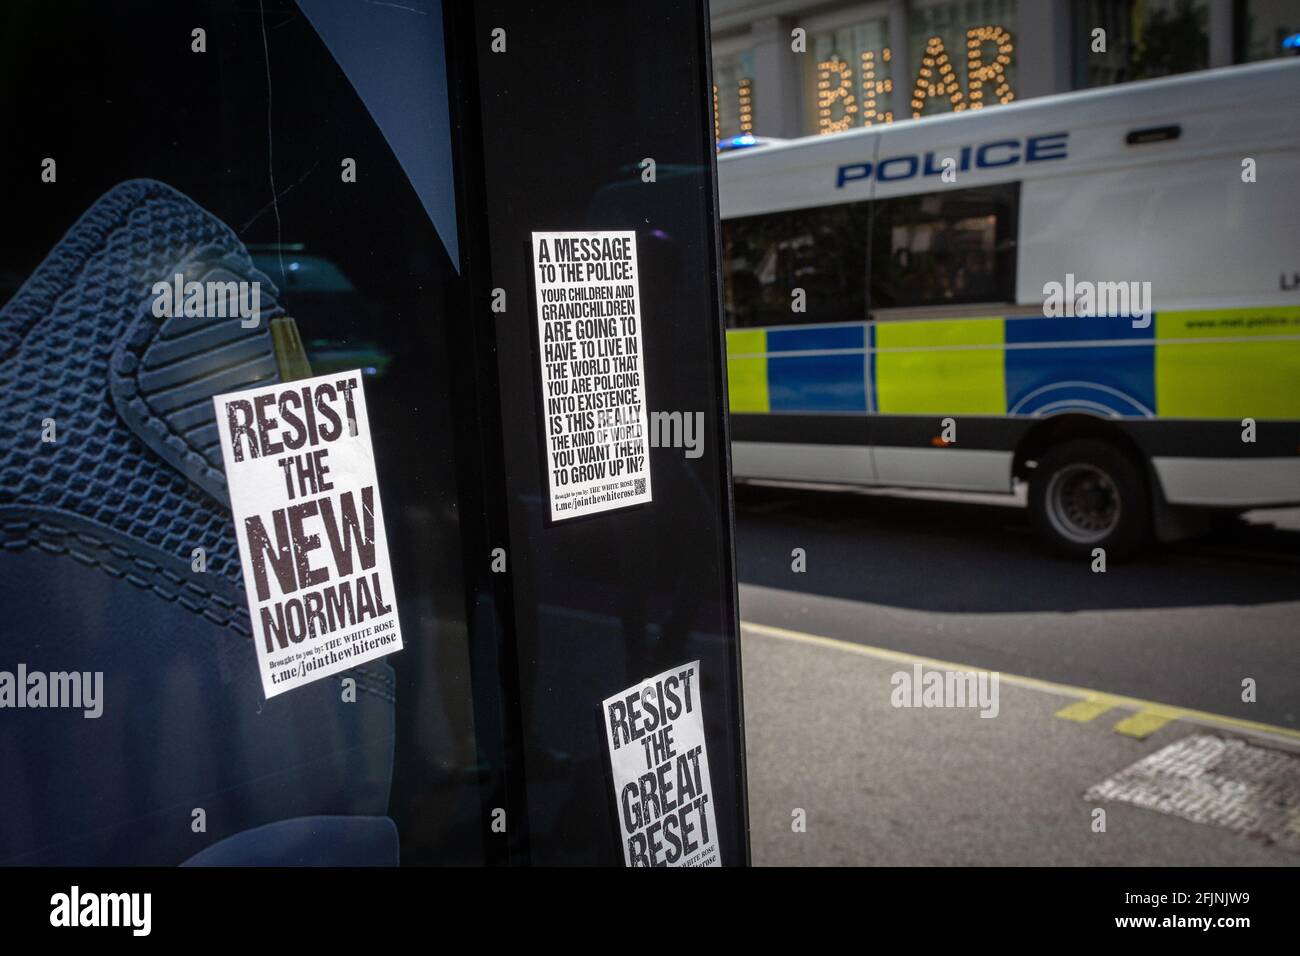 24 avril 2021, Londres, Angleterre, Royaume-Uni : arrêt de bus avec autocollants et passage d'une fourgonnette de police lors d'une manifestation anti-verrouillage à Londres, Royaume-Uni. Banque D'Images